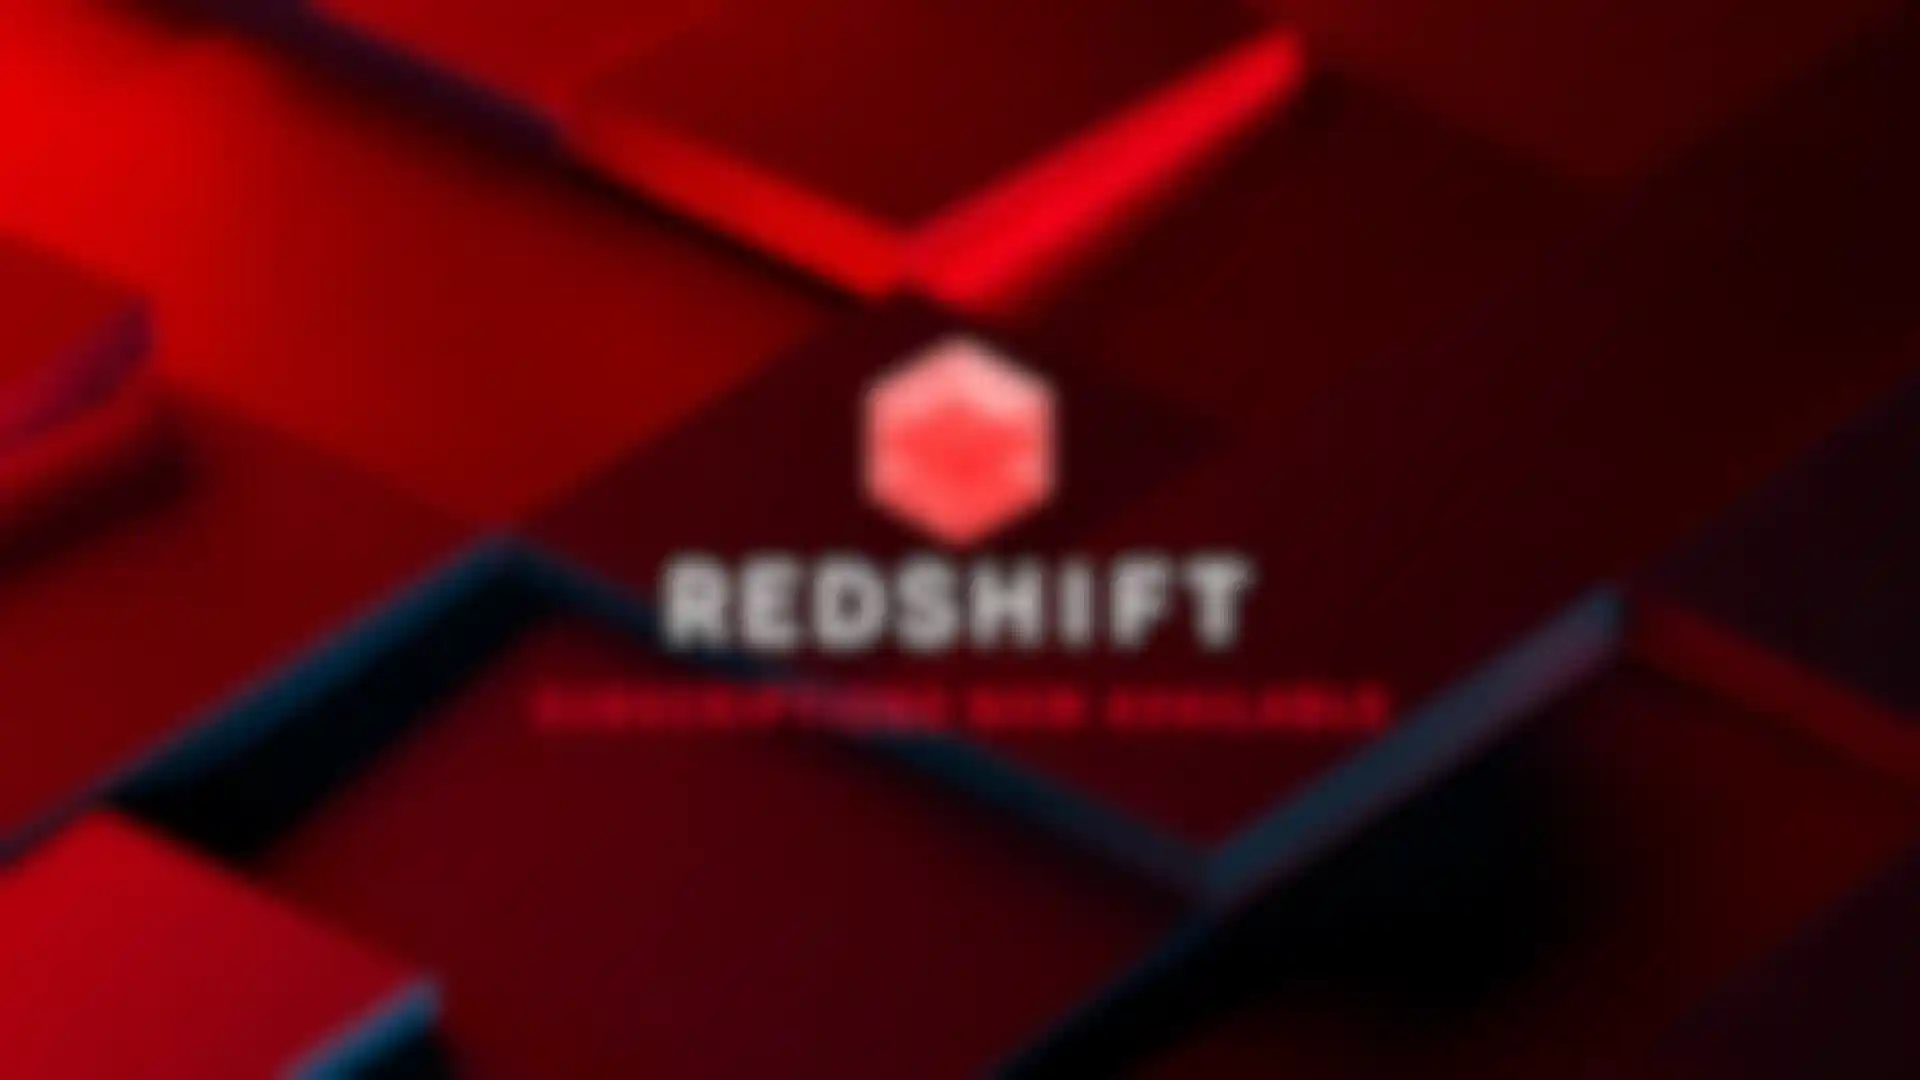 Redshift ist jetzt im Abo erhältlich image